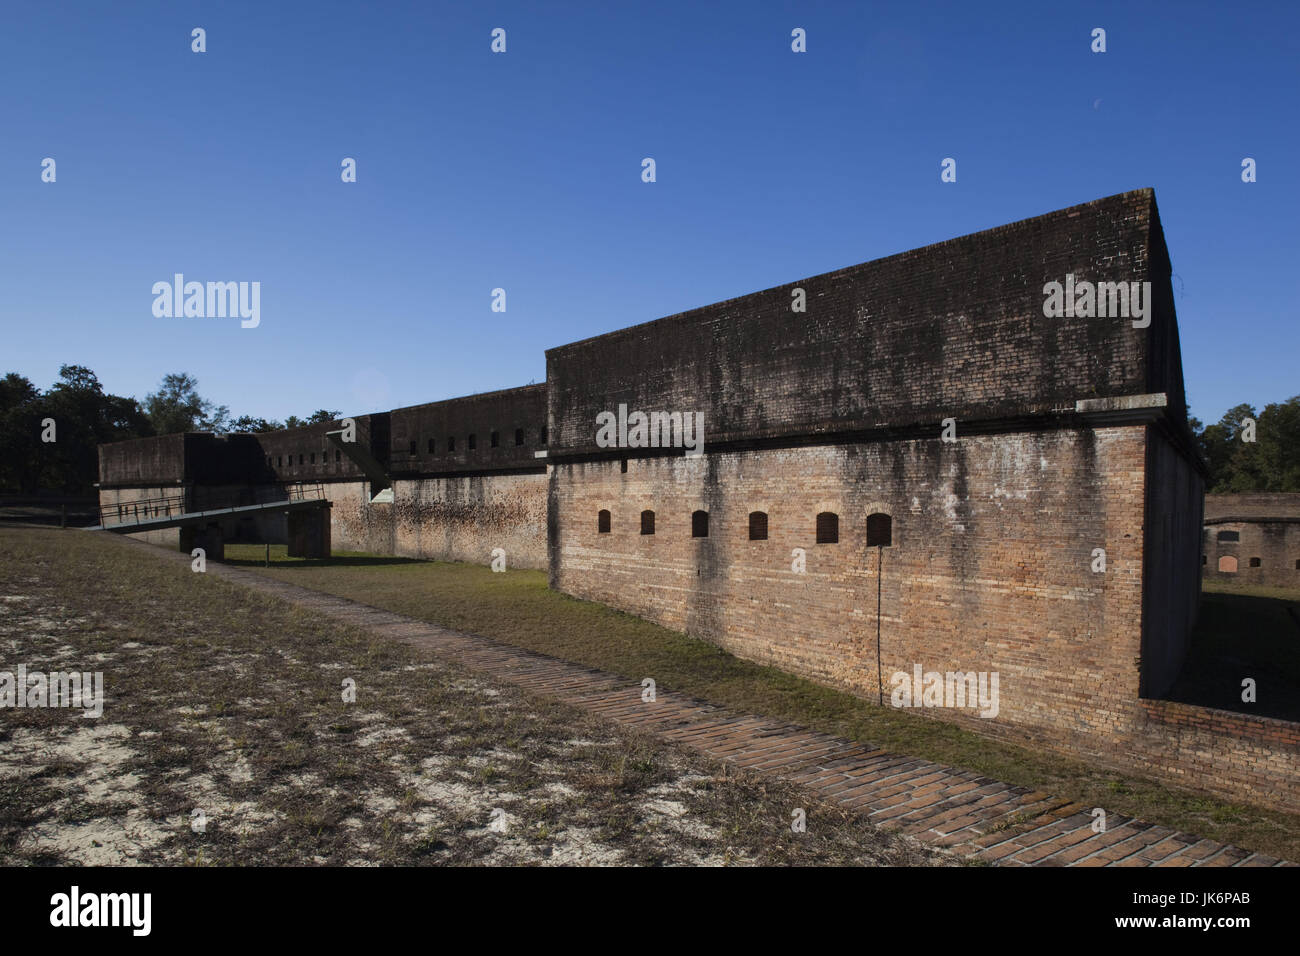 USA, Florida, Florida Panhandle, Pensacola, Advanced Redoubt, US Civil War-era fort Stock Photo